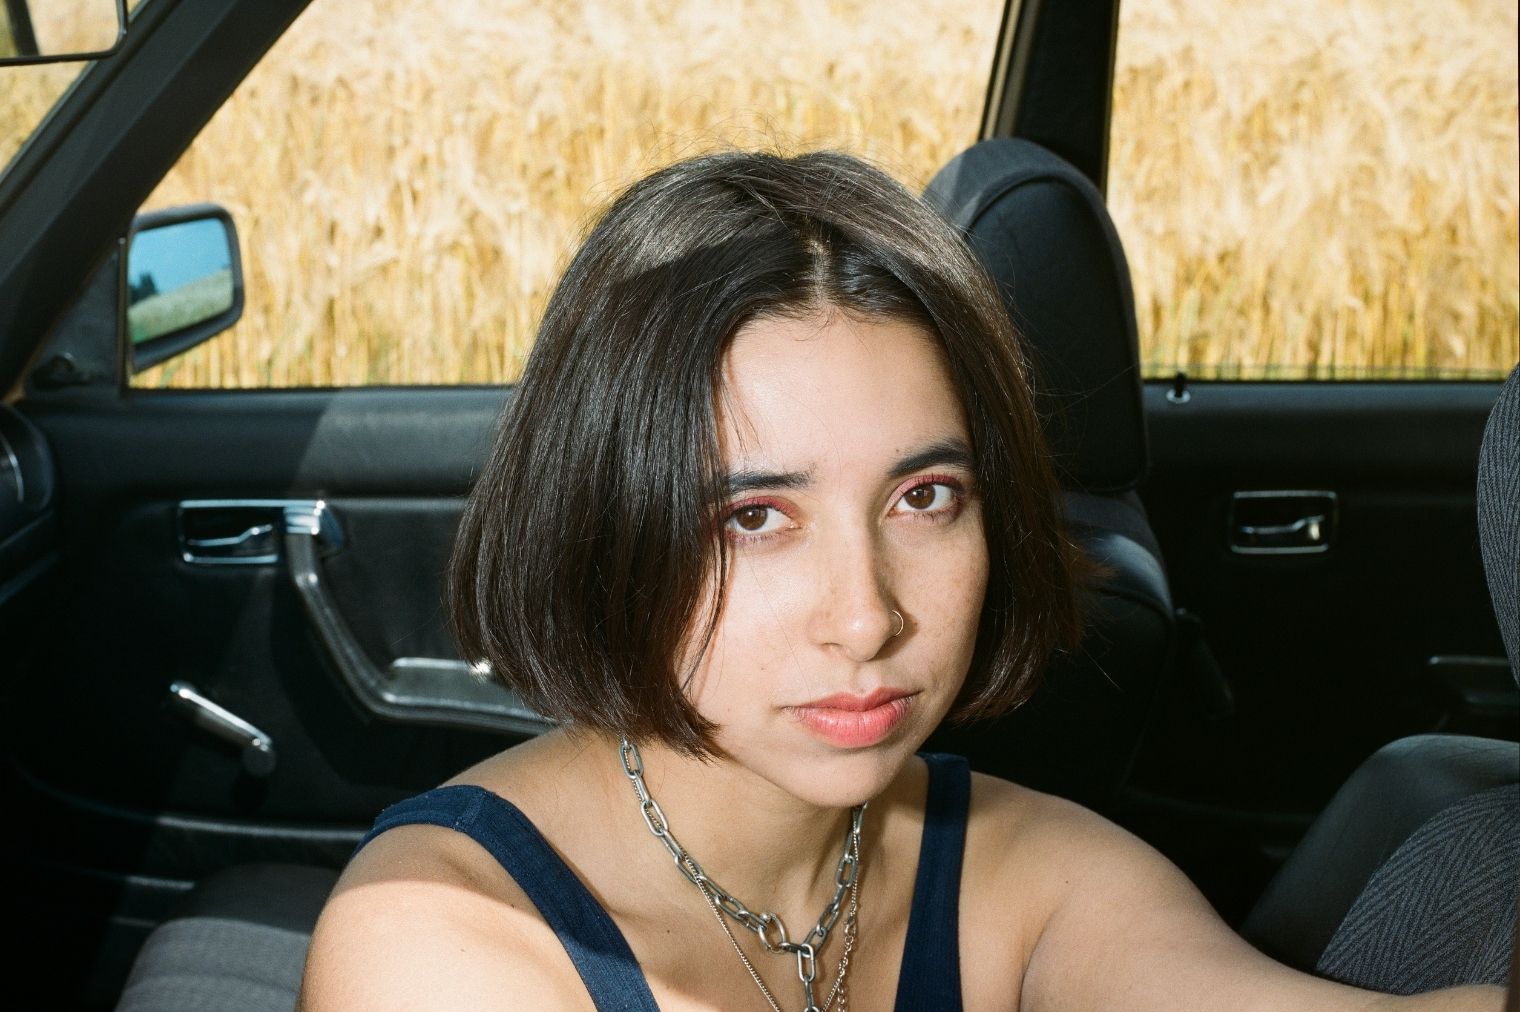 Die Sängerin Brenda Blitz sitzt in einem Auto und blickt direkt in die Kamera